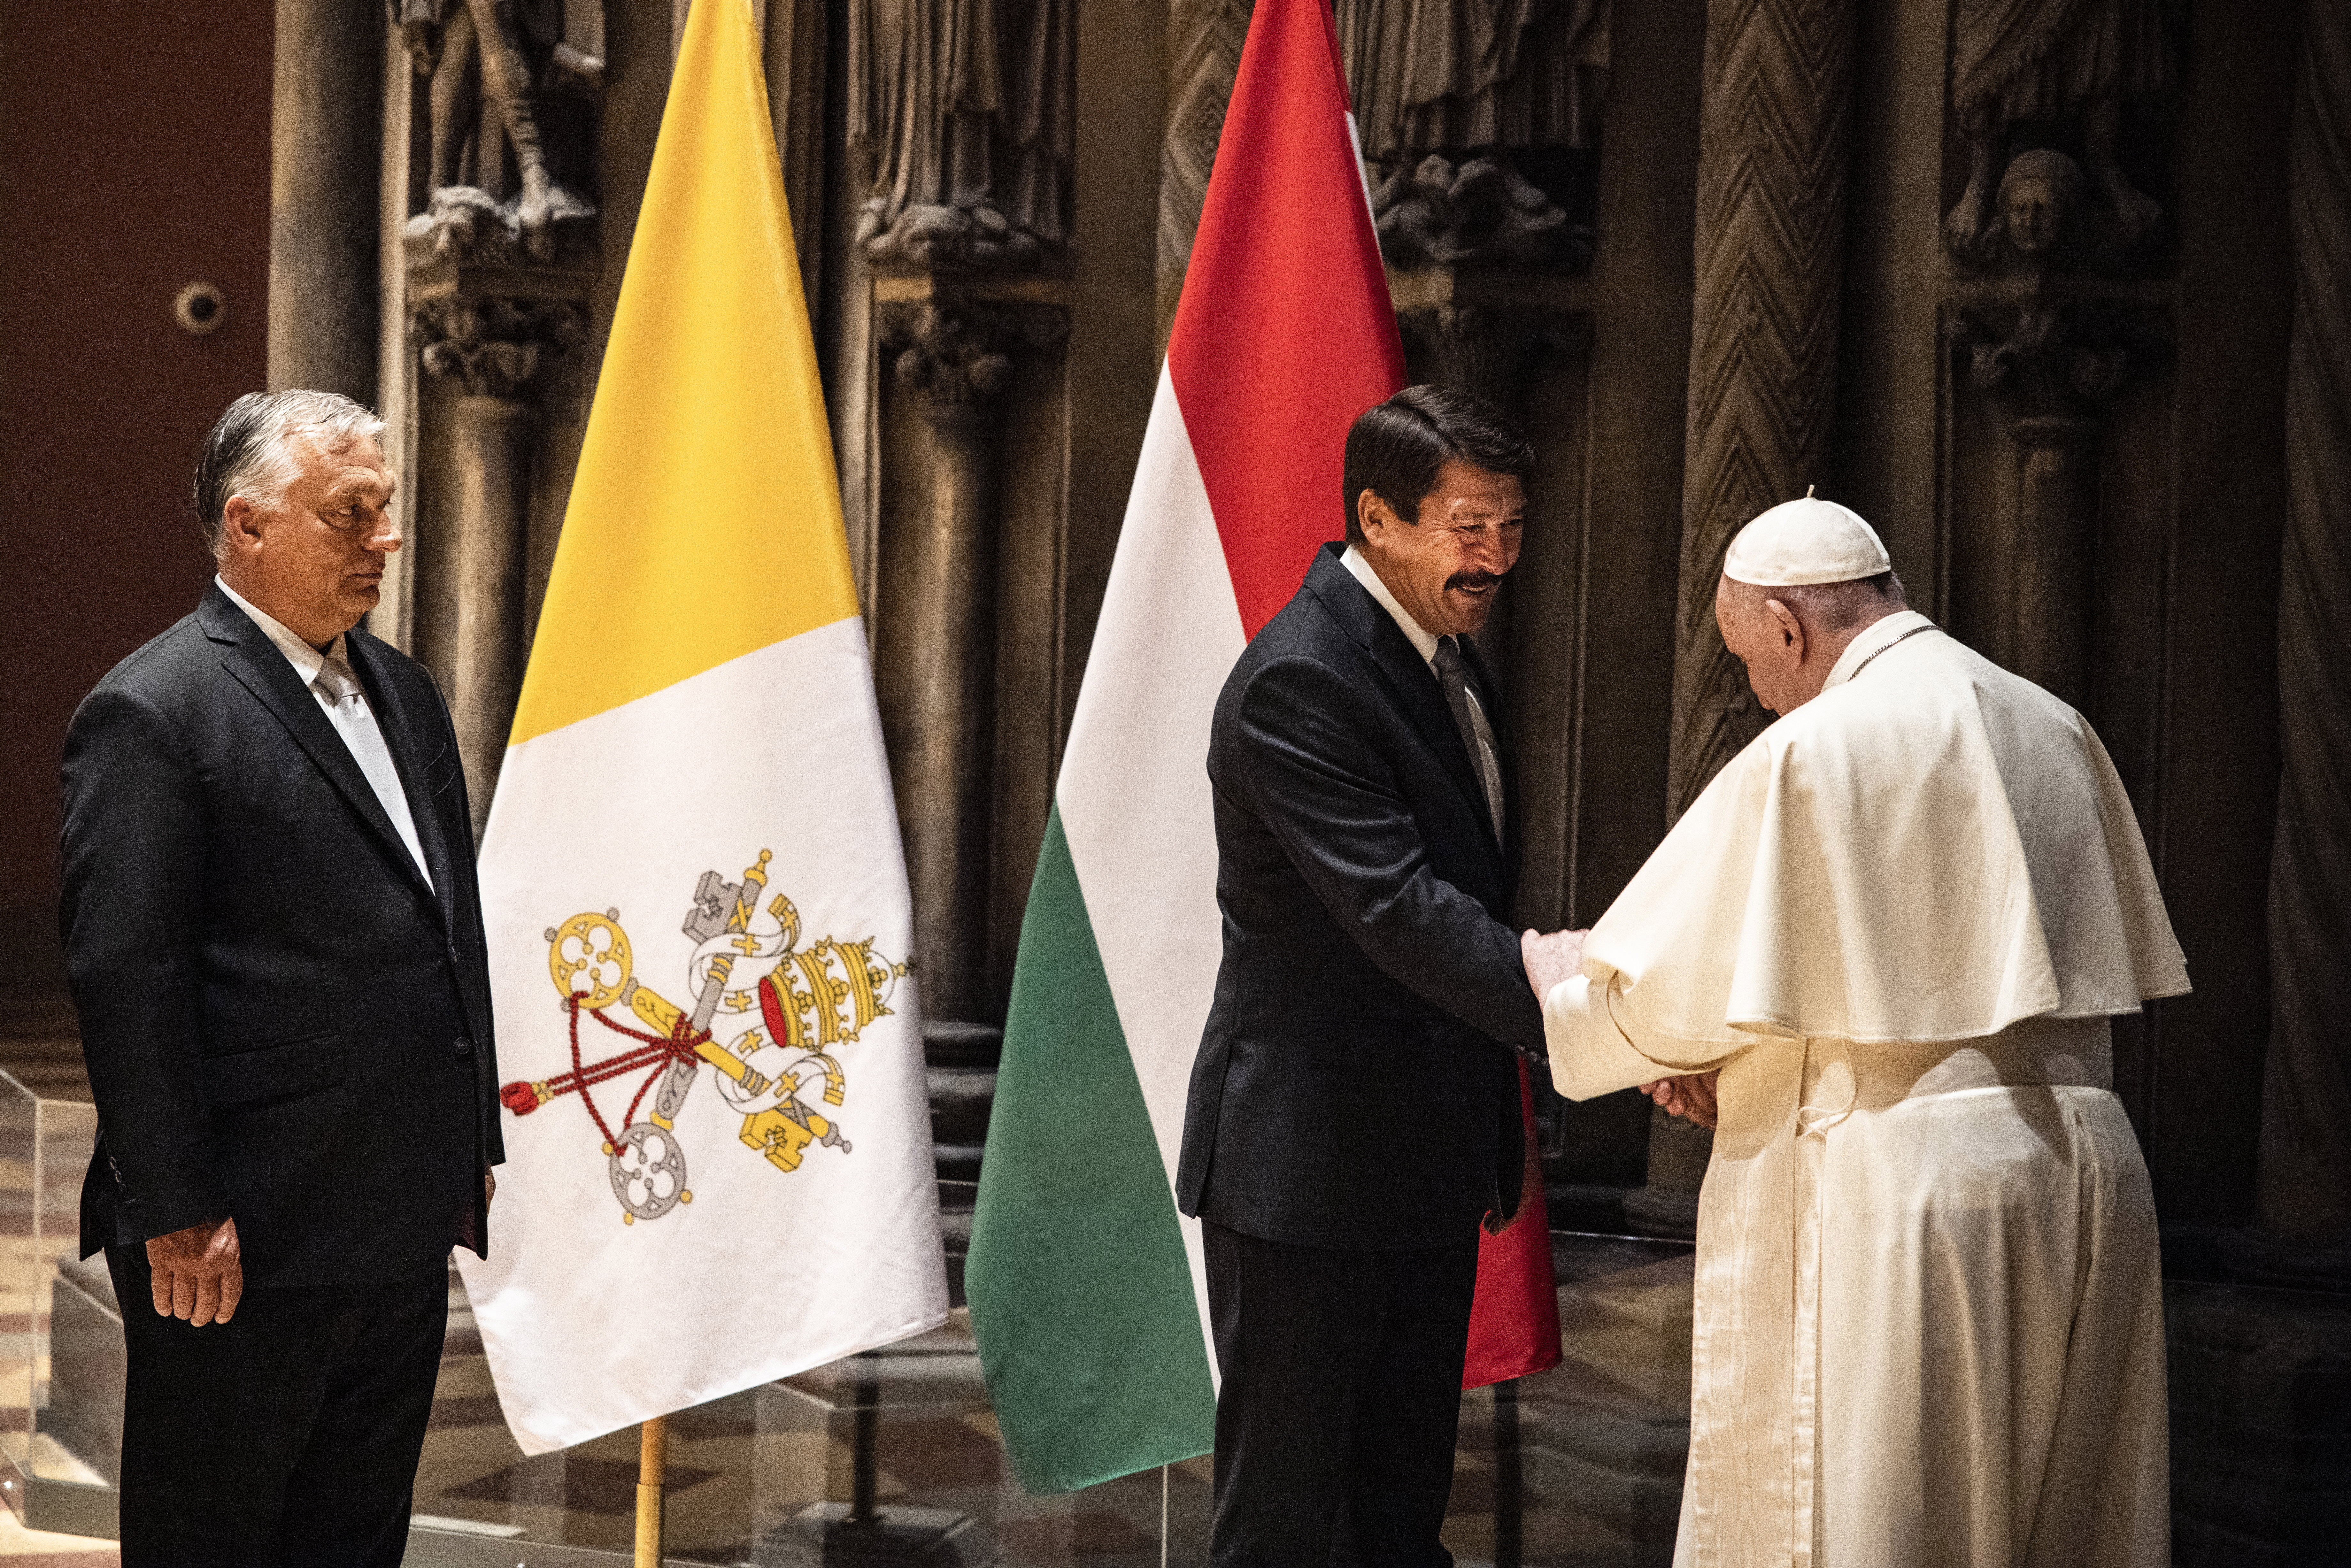 Ferenc pápa találkozója (j) Áder János köztársasági elnökkel (k) és Orbán Viktor miniszterelnökkel (b) az 52. Nemzetközi Eucharisztikus Kongresszus (NEK) zárómiséje előtt a Szépművészeti Múzeumban 2021. szeptember 12-én.